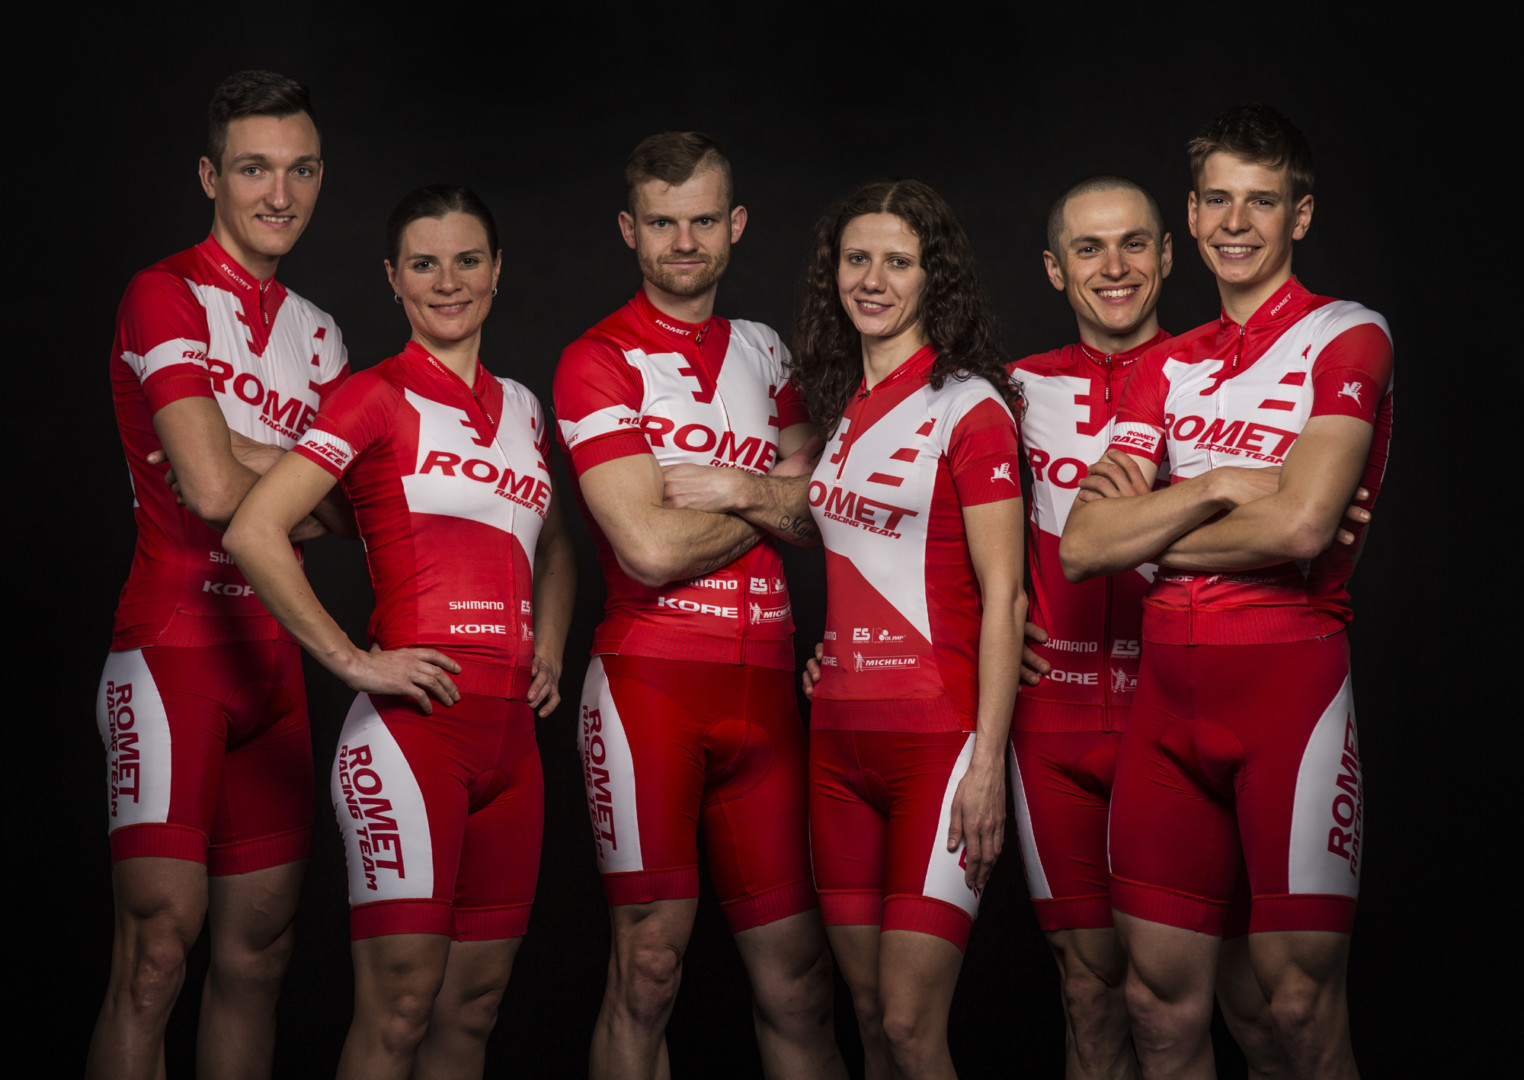 romet-racing-team-2016-3